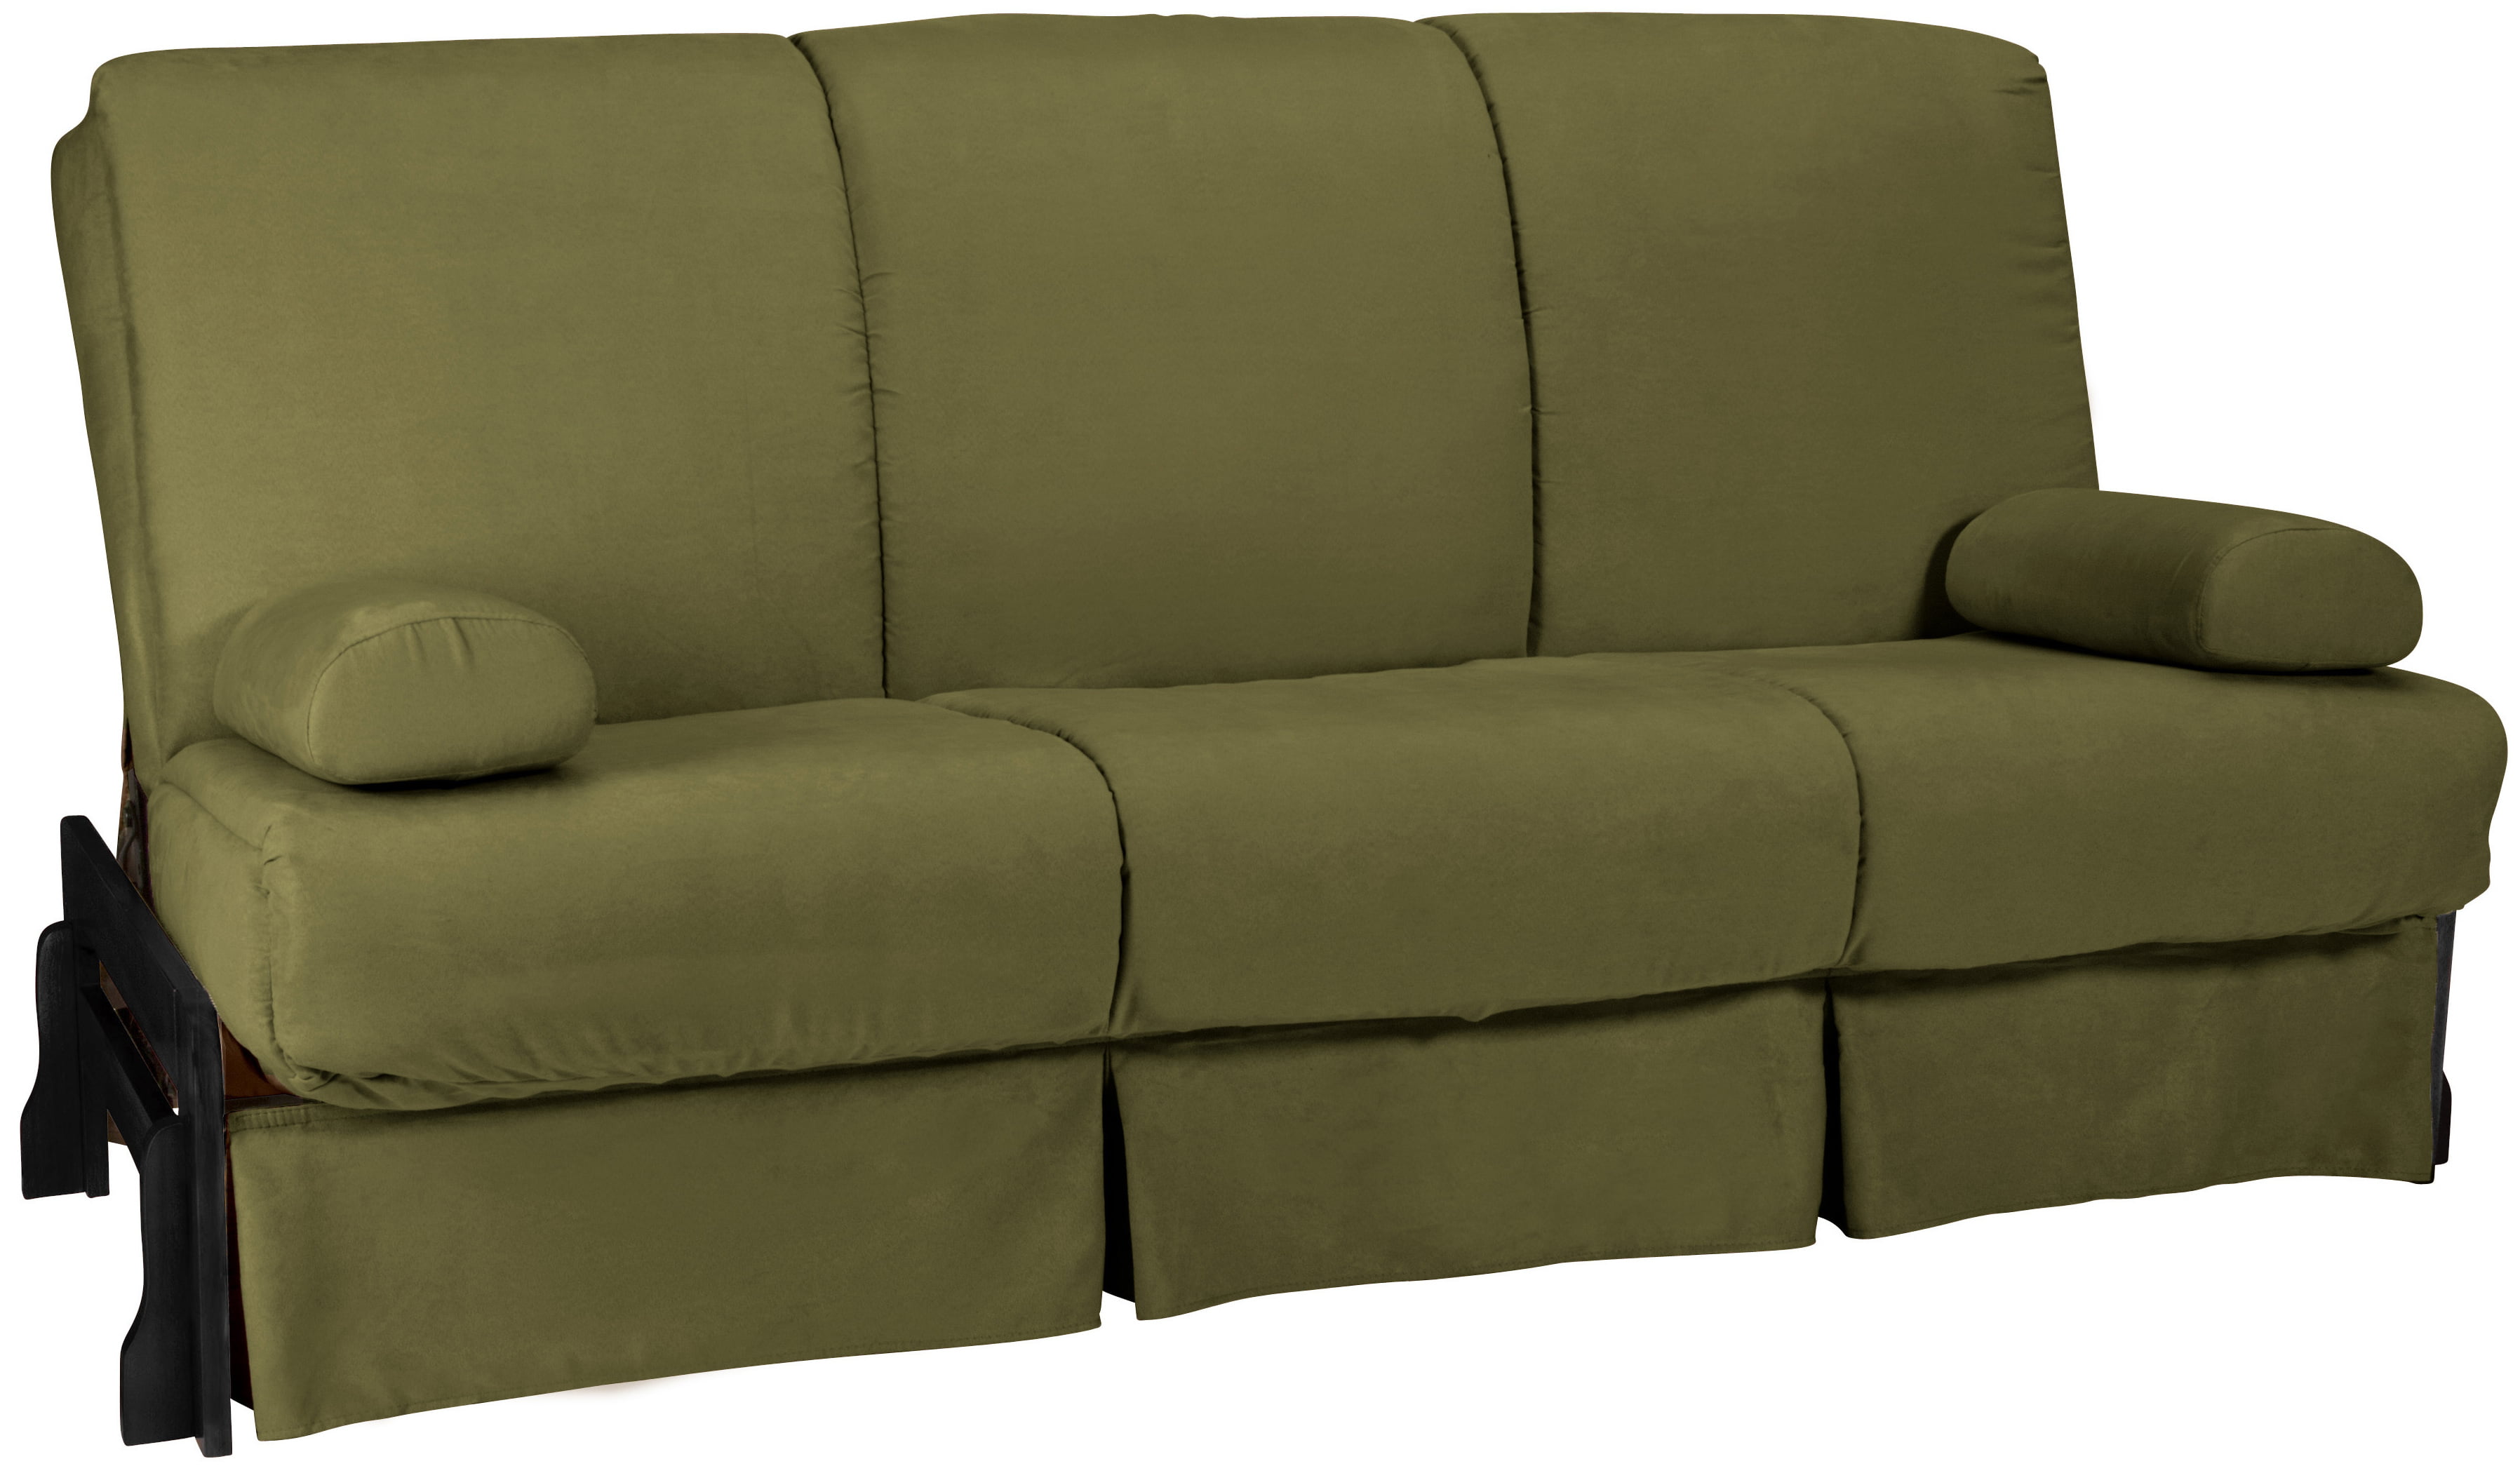 Fun Furnishings Micro Suede Sofa Sleeper with Pillows Green